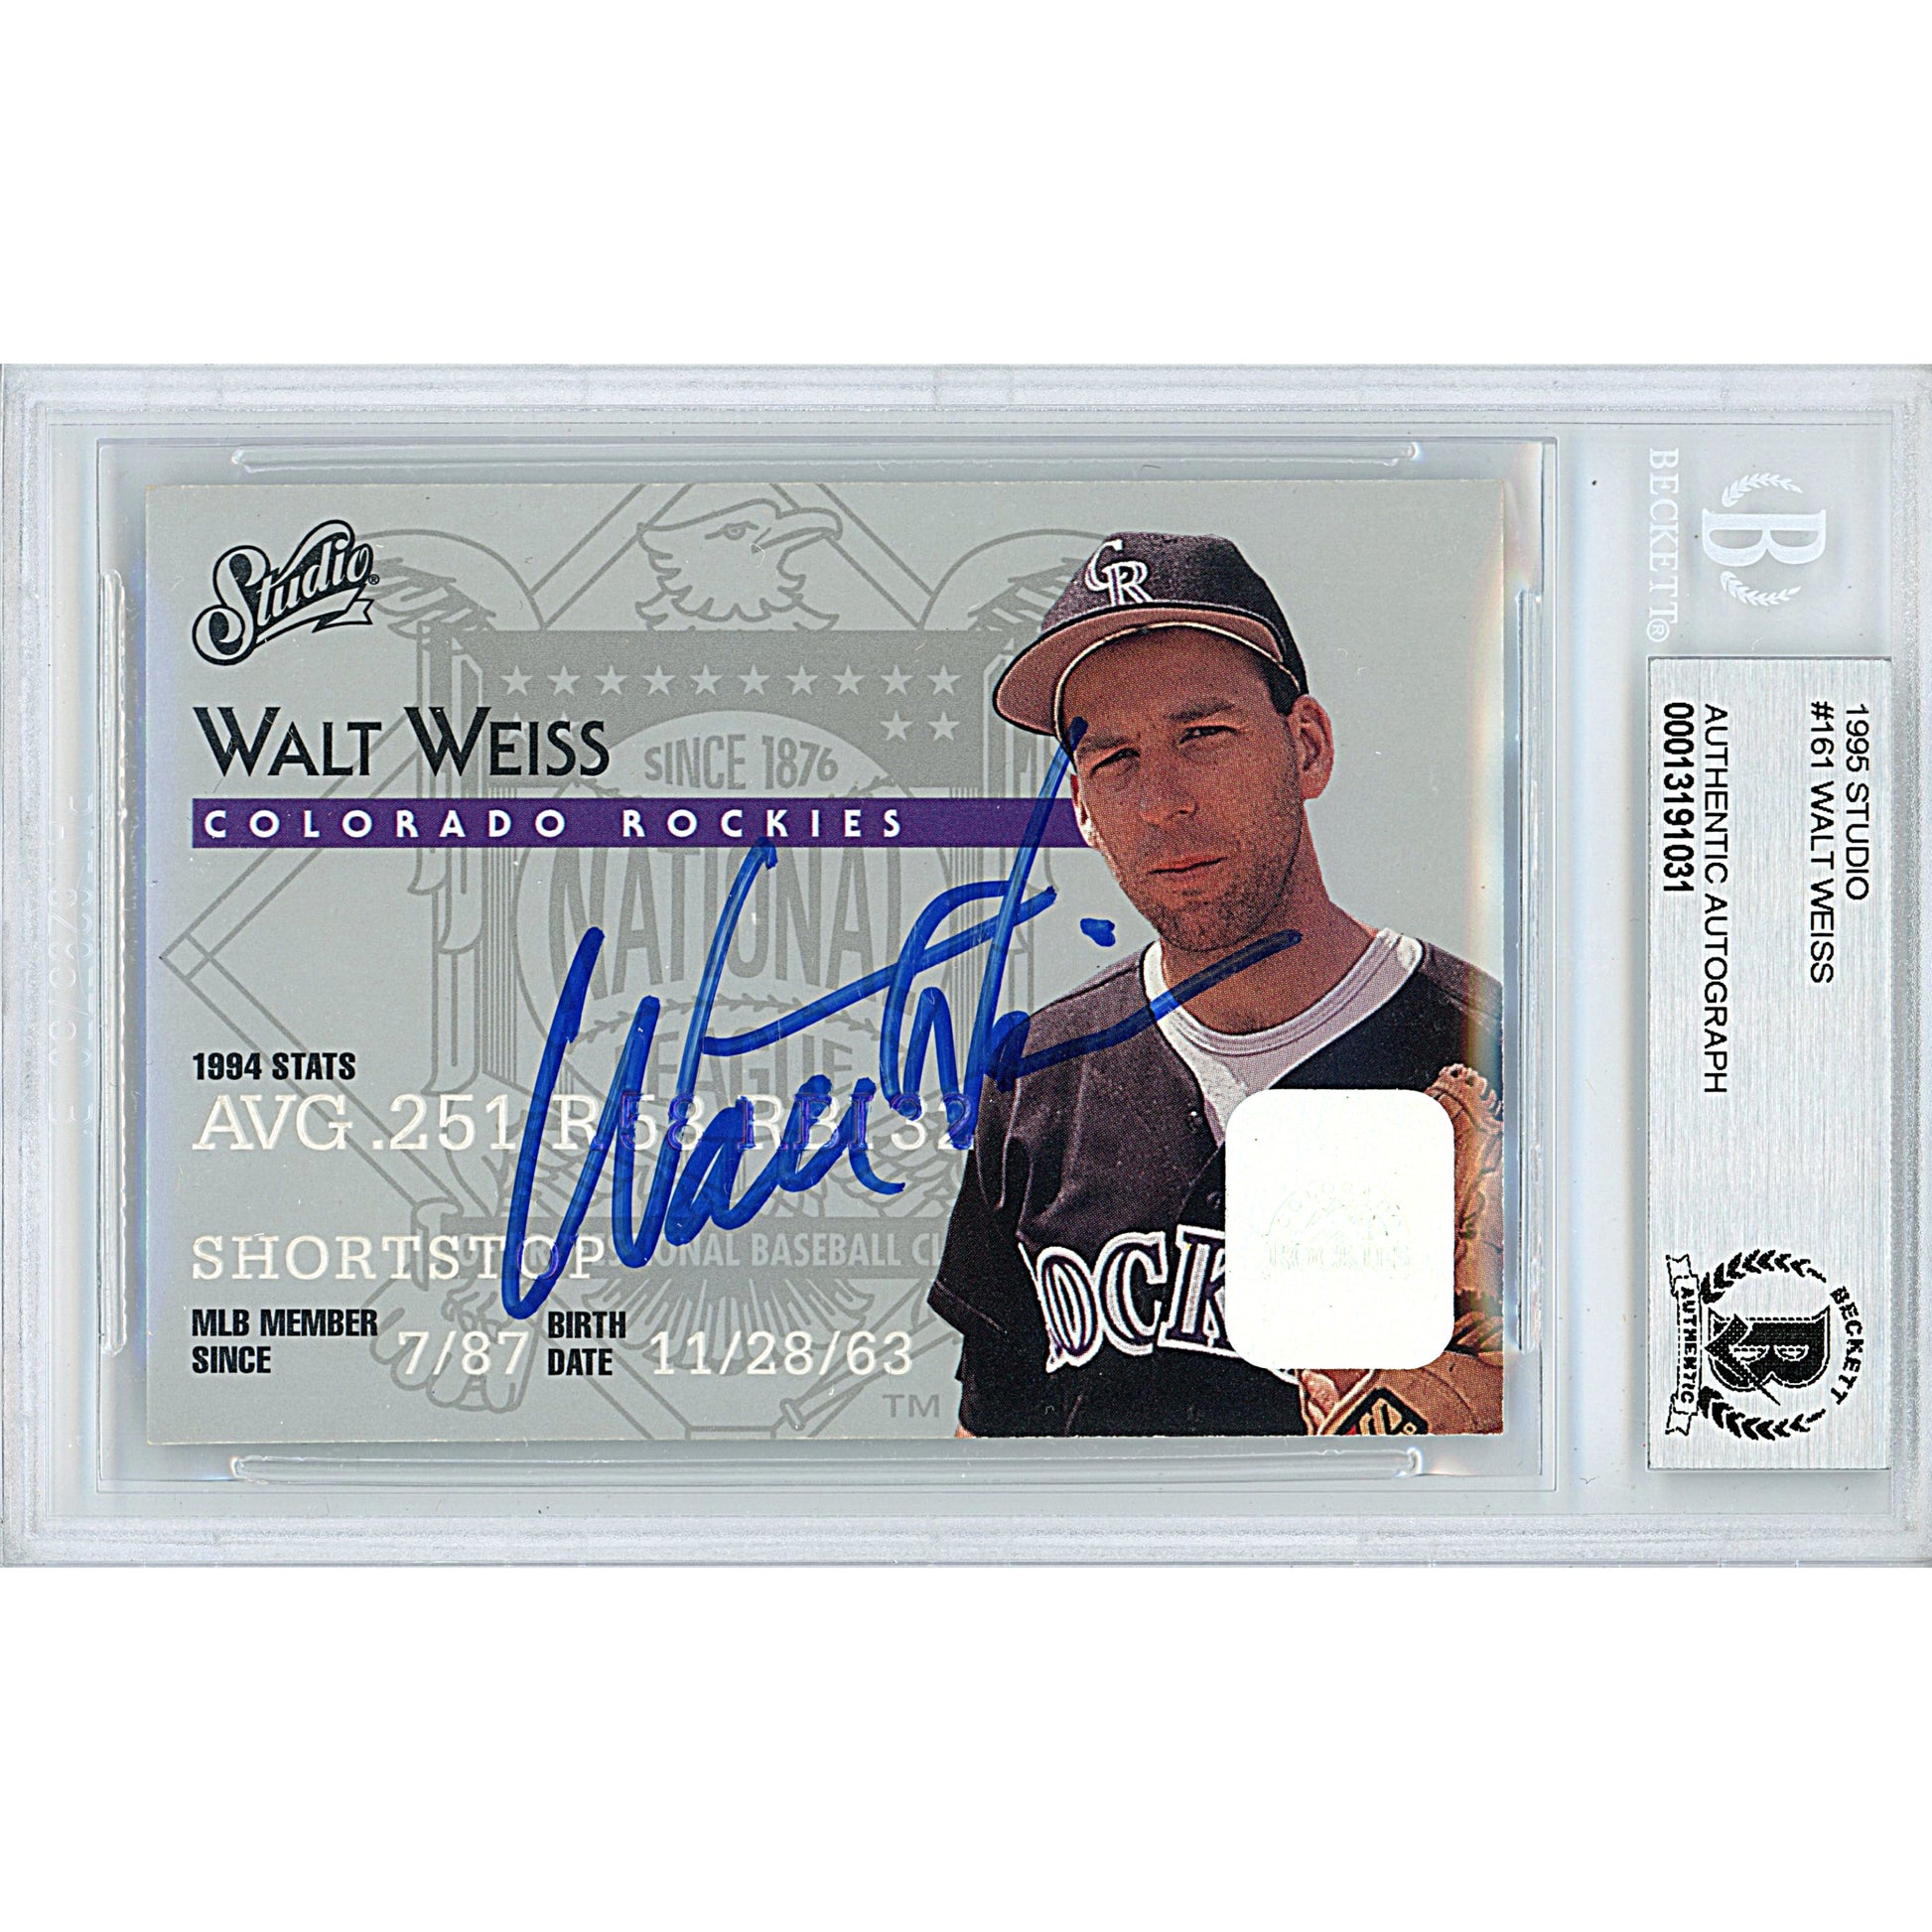 walt weiss baseball card